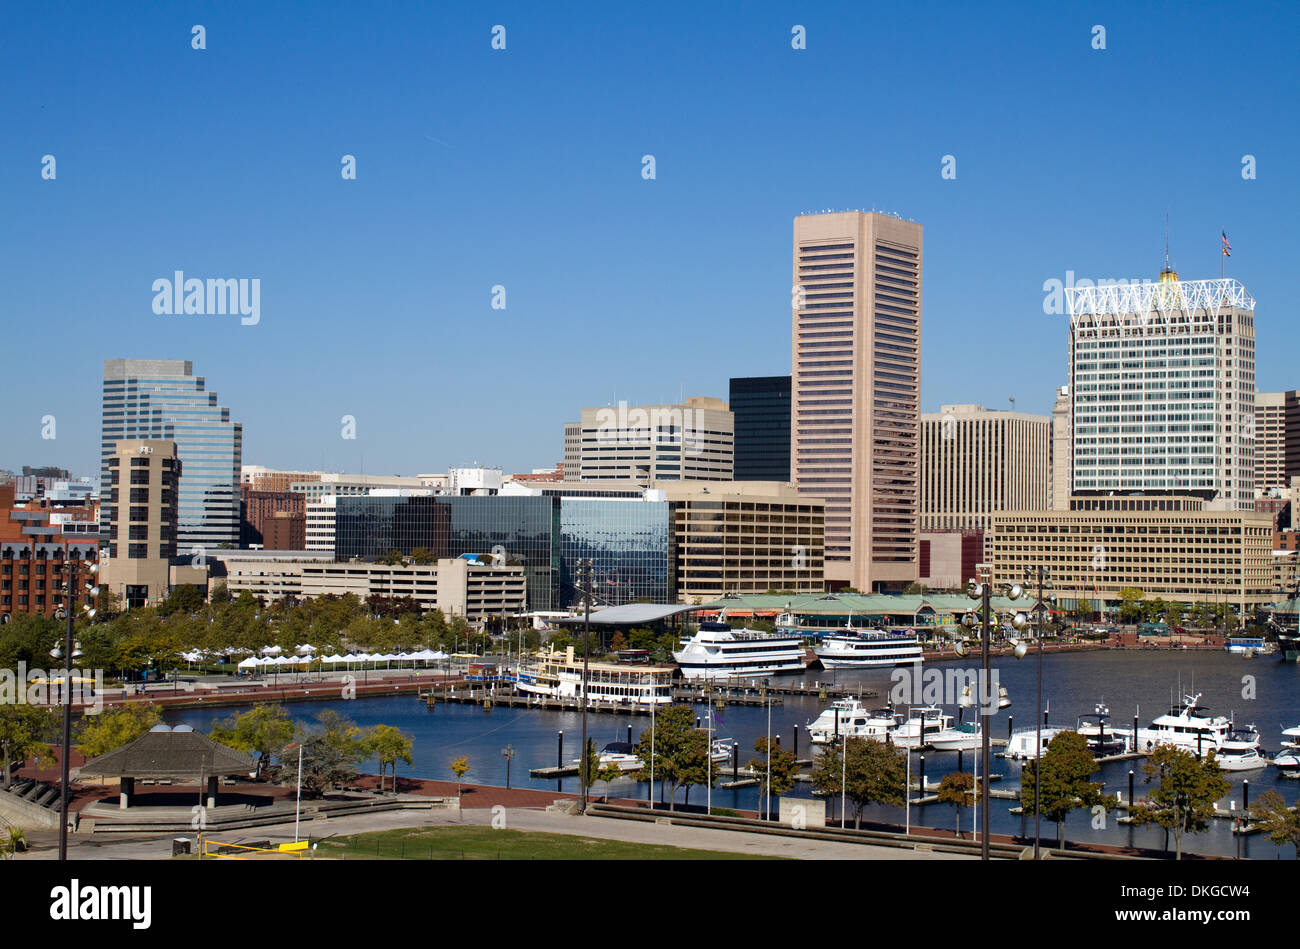 Die Innenstadt von Baltimore, Maryland Innenhafen Skyline der Stadt mit der Marina, Gebäuden und an einem klaren sonnigen Tag. Stockfoto